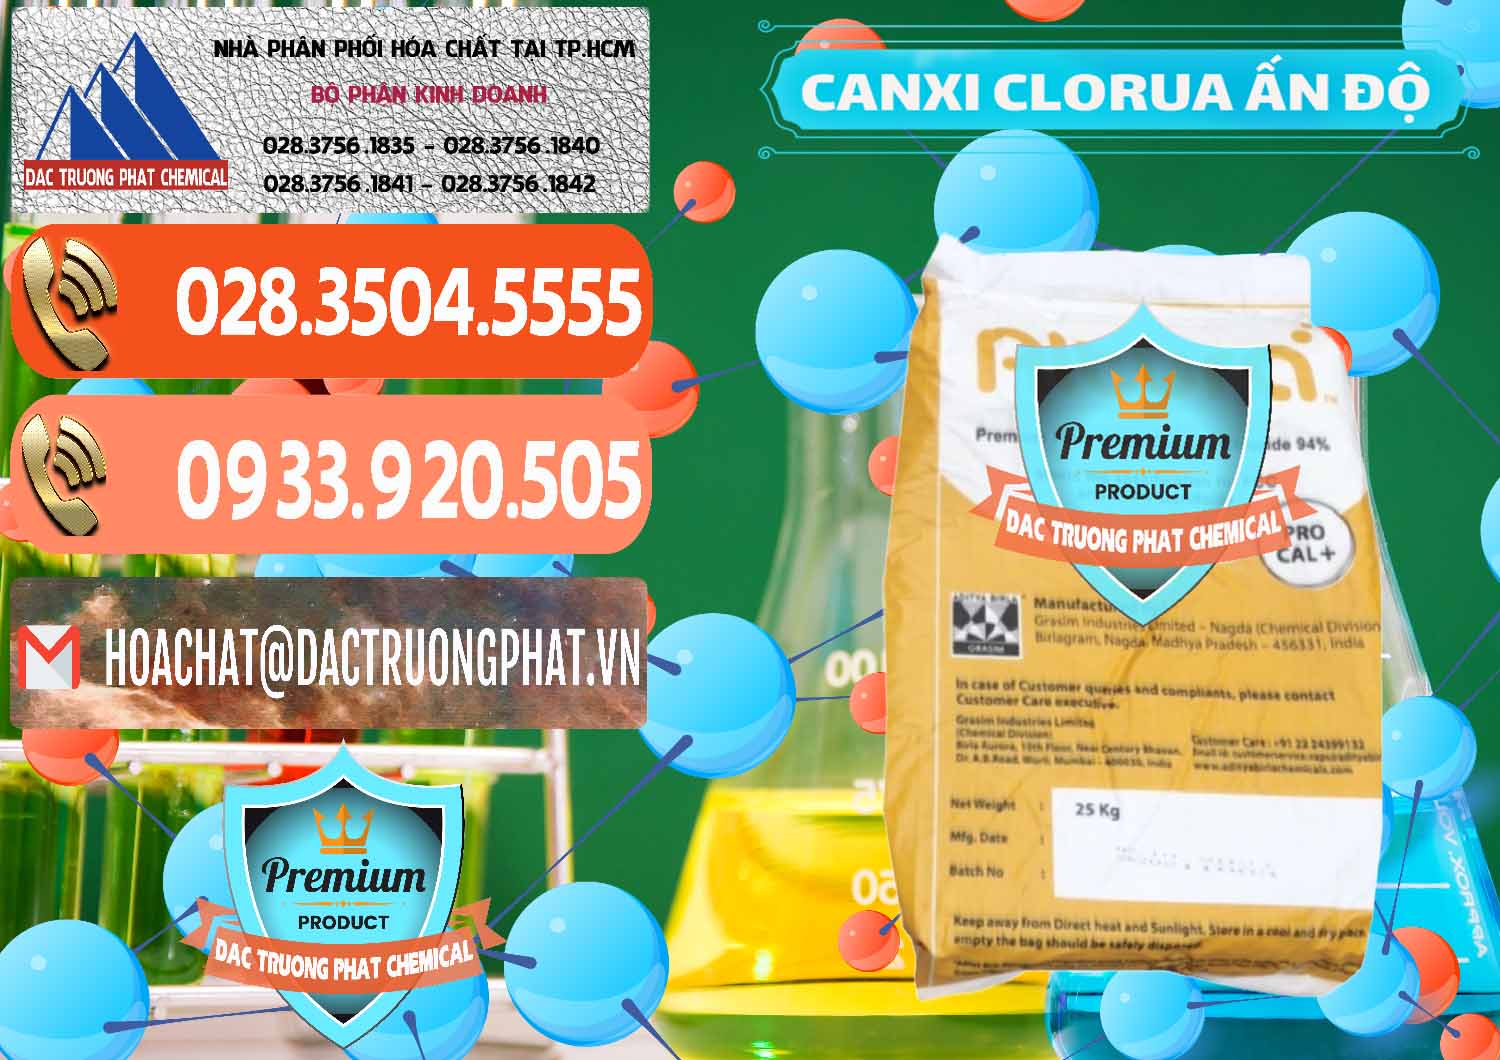 Cty chuyên bán - phân phối CaCl2 – Canxi Clorua Food Grade Altura Aditya Birla Grasim Ấn Độ India - 0436 - Chuyên cung cấp & nhập khẩu hóa chất tại TP.HCM - hoachatmientay.com